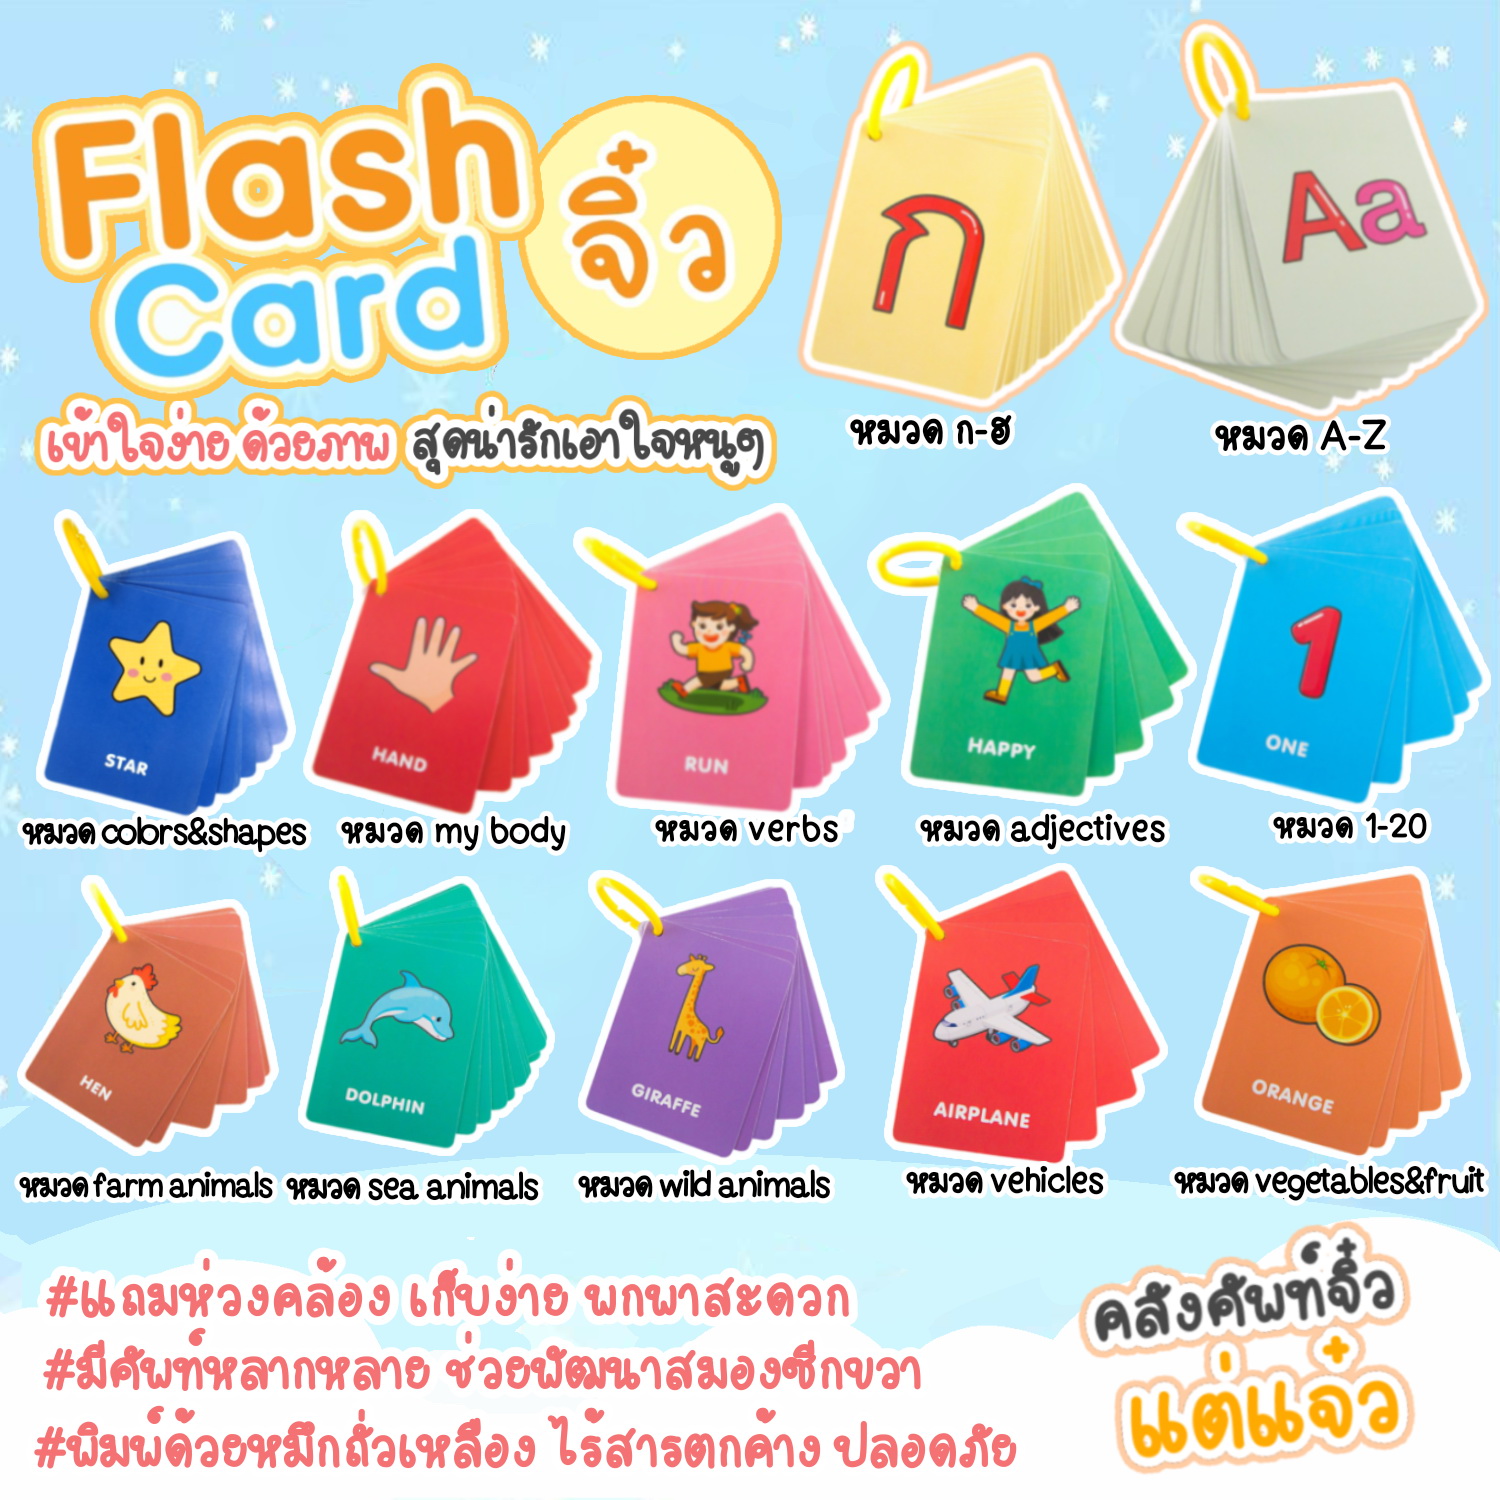 FlashCard แฟลชการ์ดจิ๋ว มี 12 หมวด แถมห่วงคล้อง บัตรคำศัพท์ flash card บัตรคำ บัตรภาพสอนภาษา ชุดแฟลชการ์ด การ์ดคำศัพท์ การ์ดภาพสัตว์